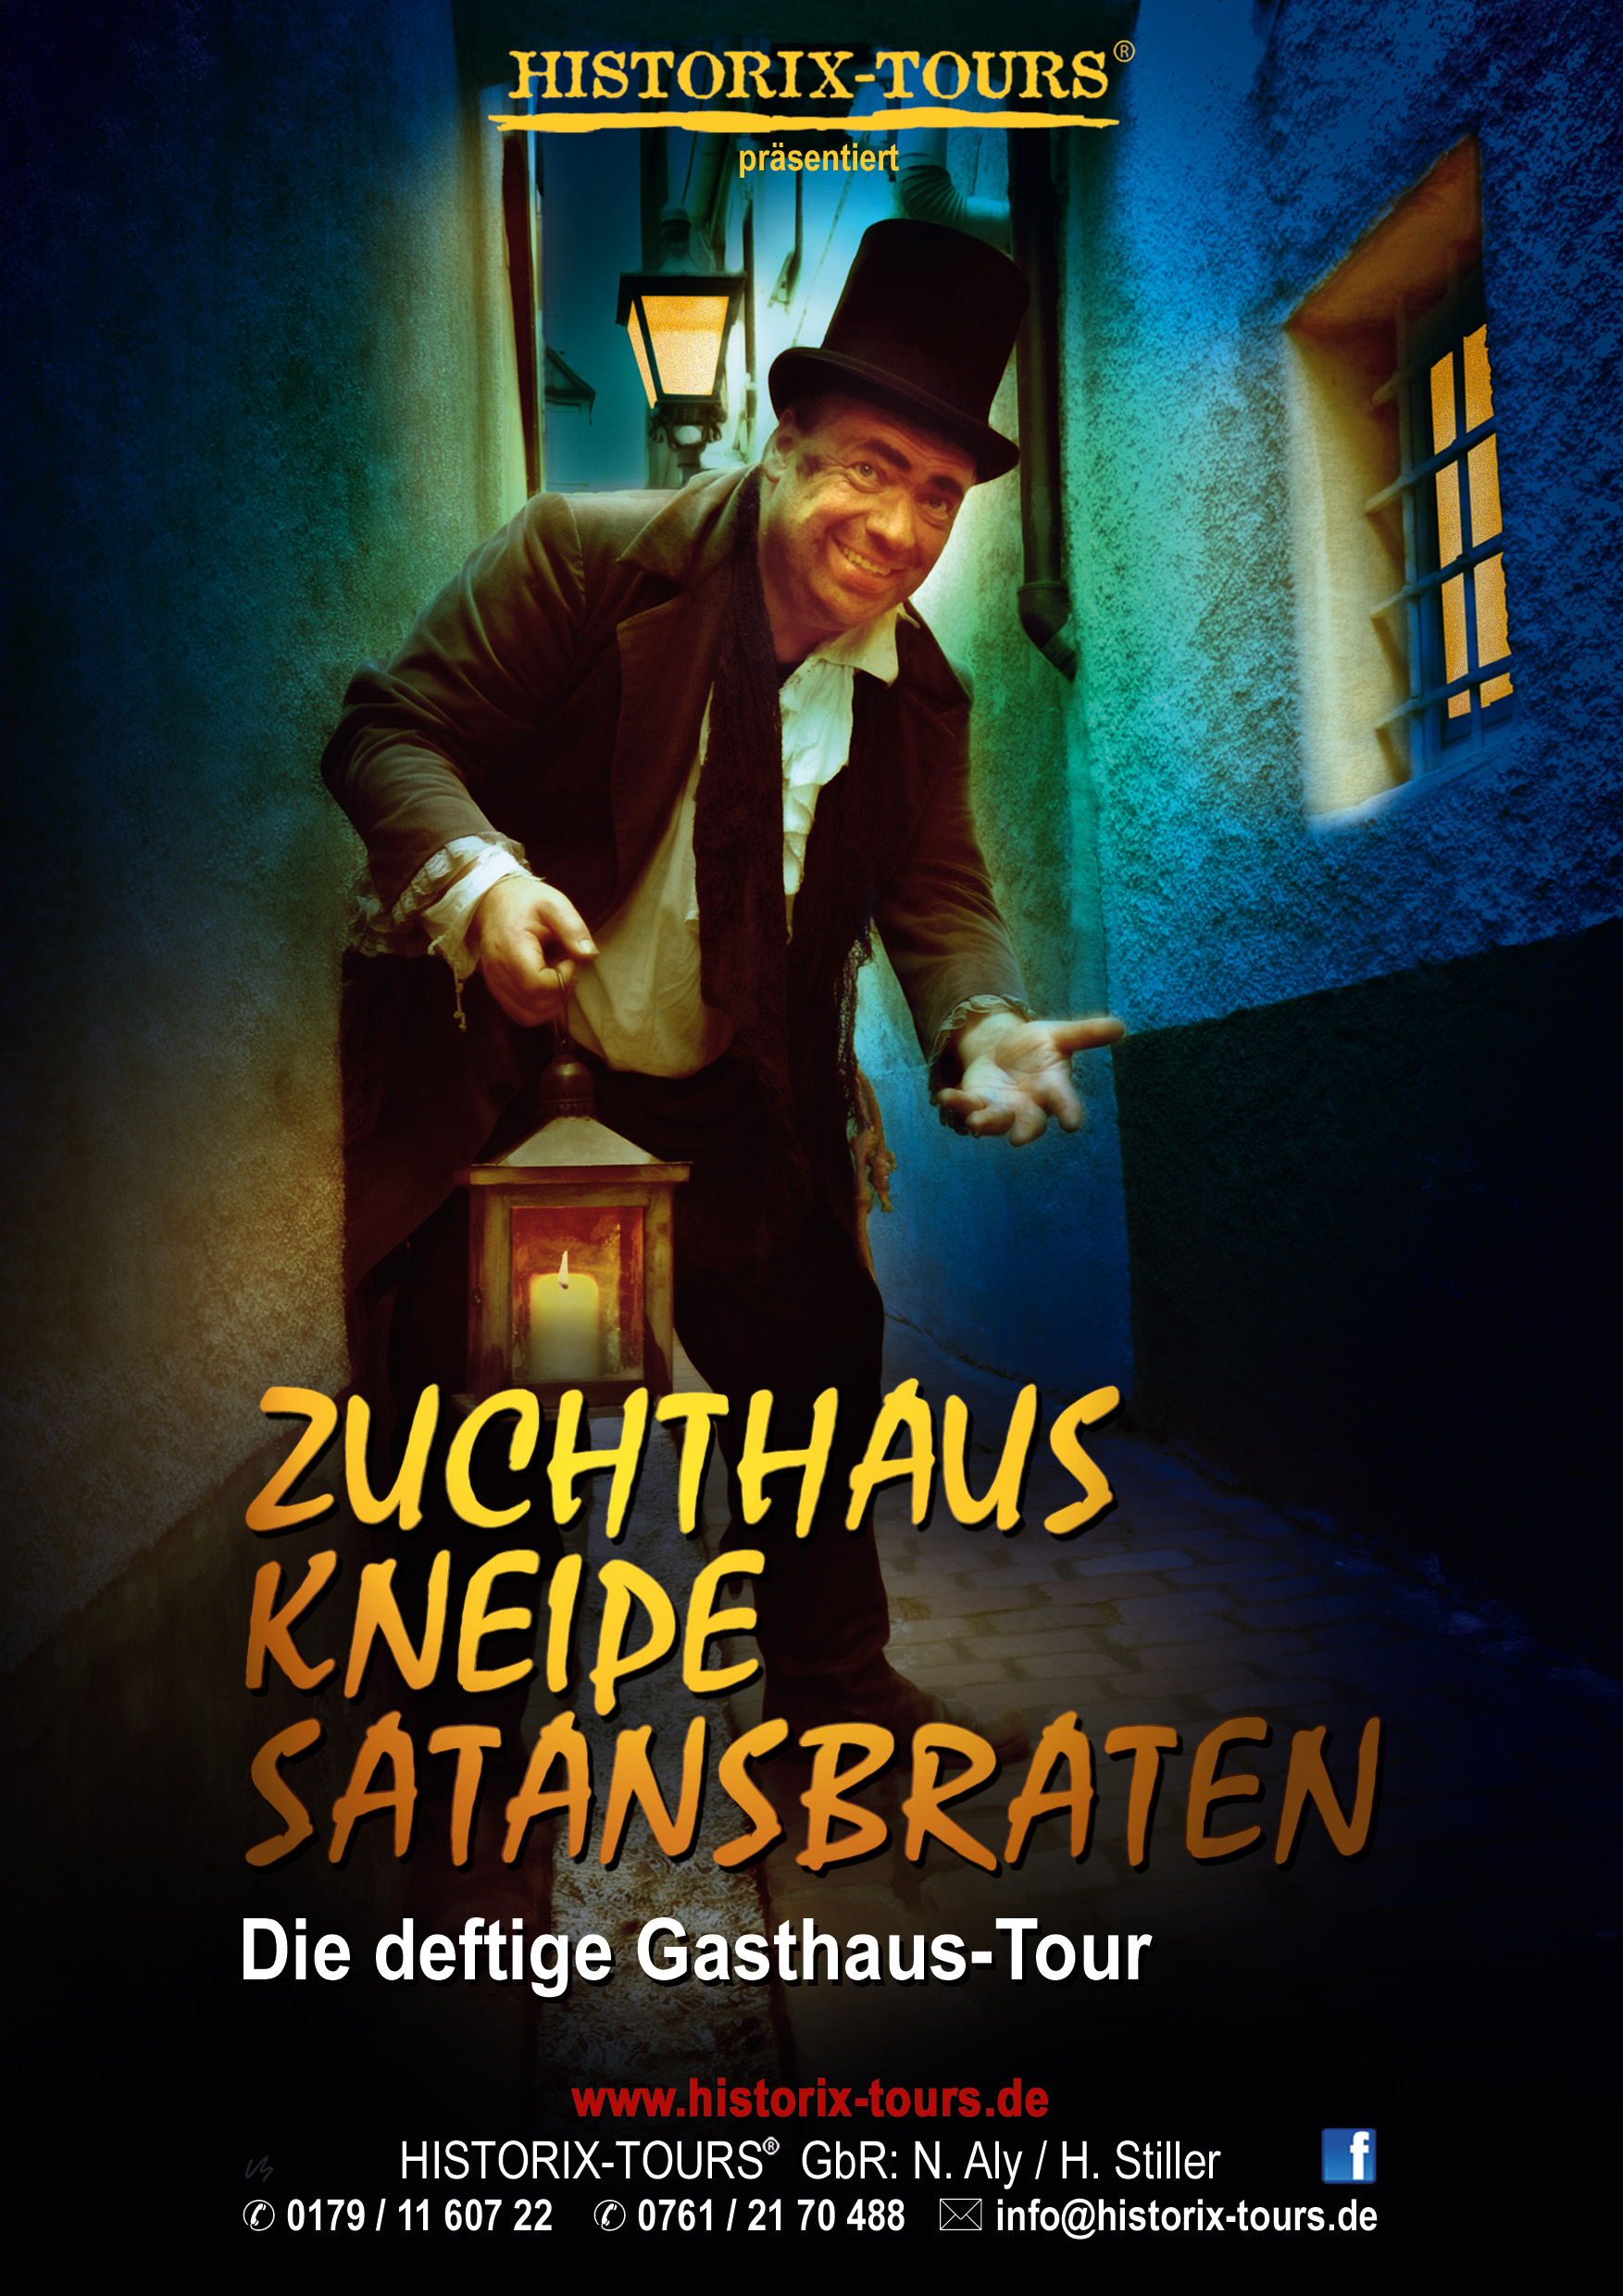 "Zuchthaus, Kneipe, Satansbraten" - Die Bier-Tour mit "Meister Albert"